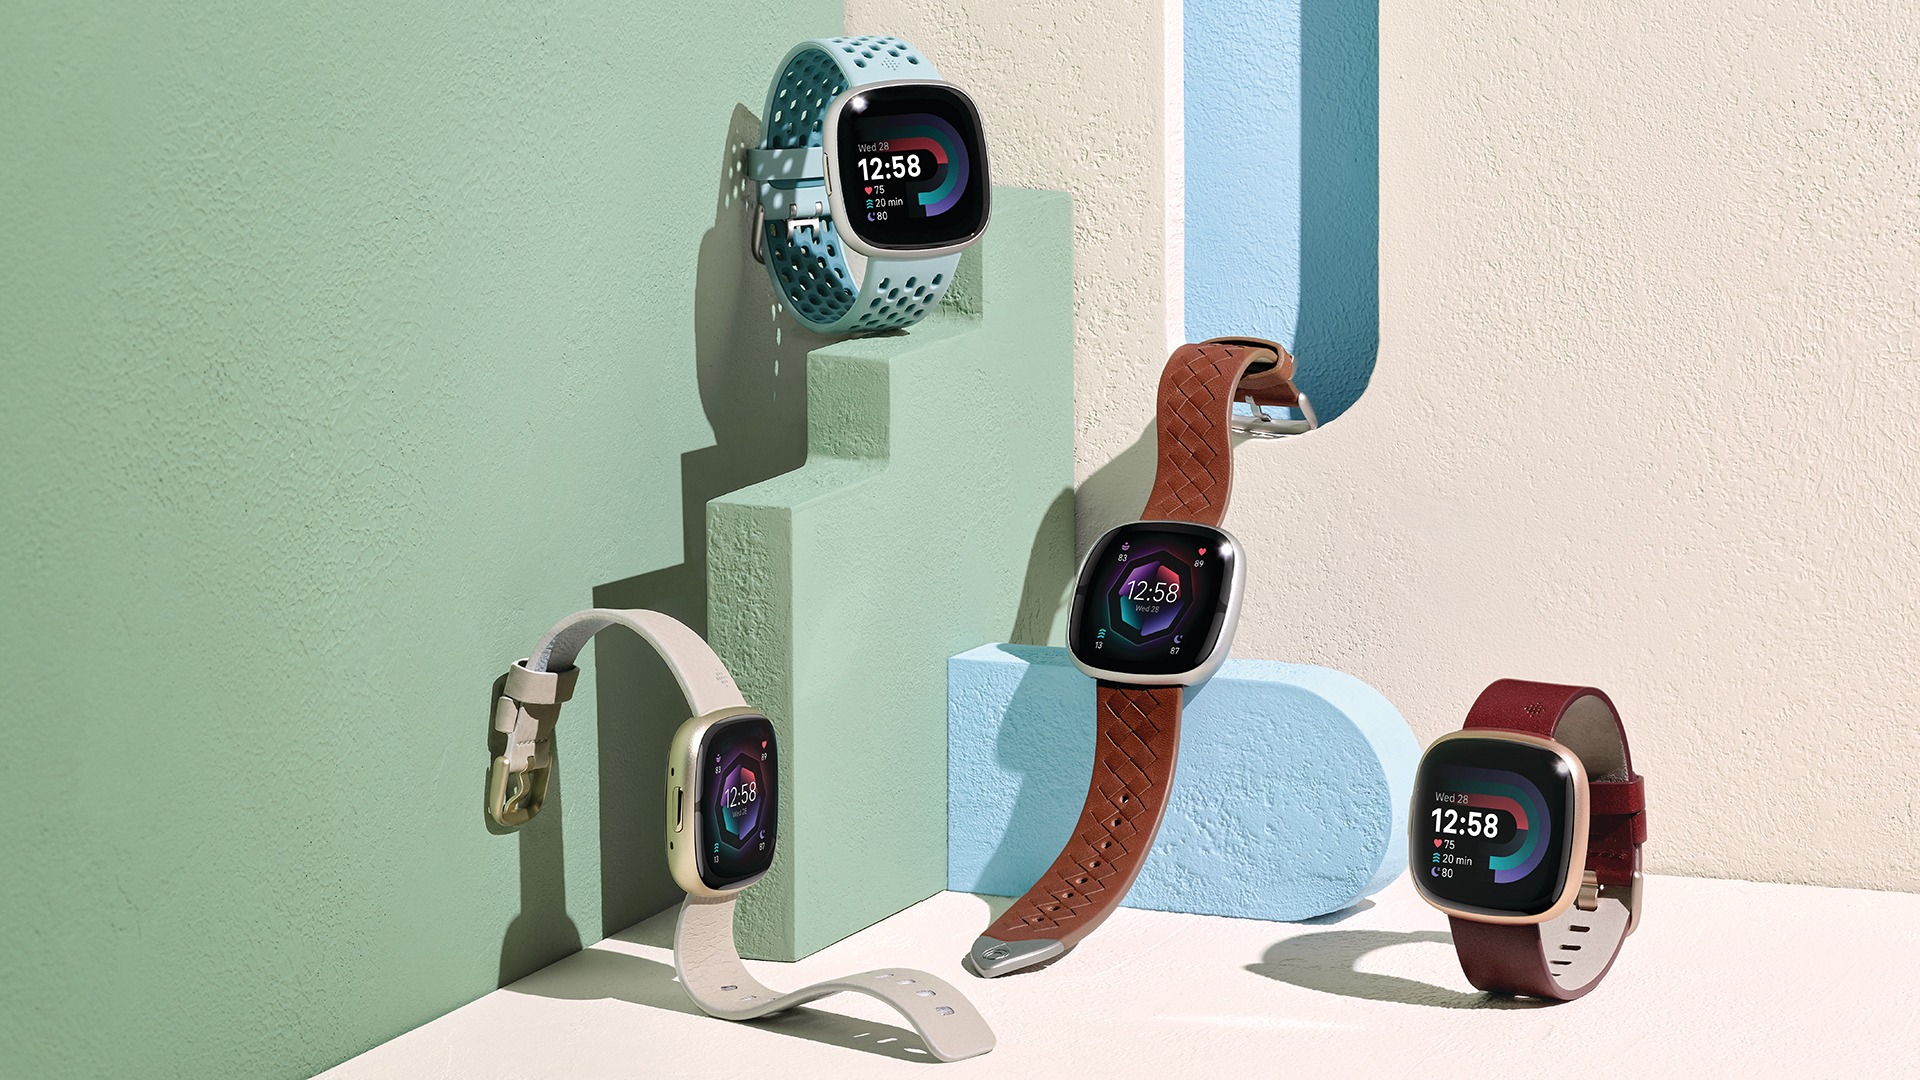 Fitbit Sense 2 dan Fitbit Versa 4 Hero Image dengan empat jam tangan di antara wallpaper warna-warni